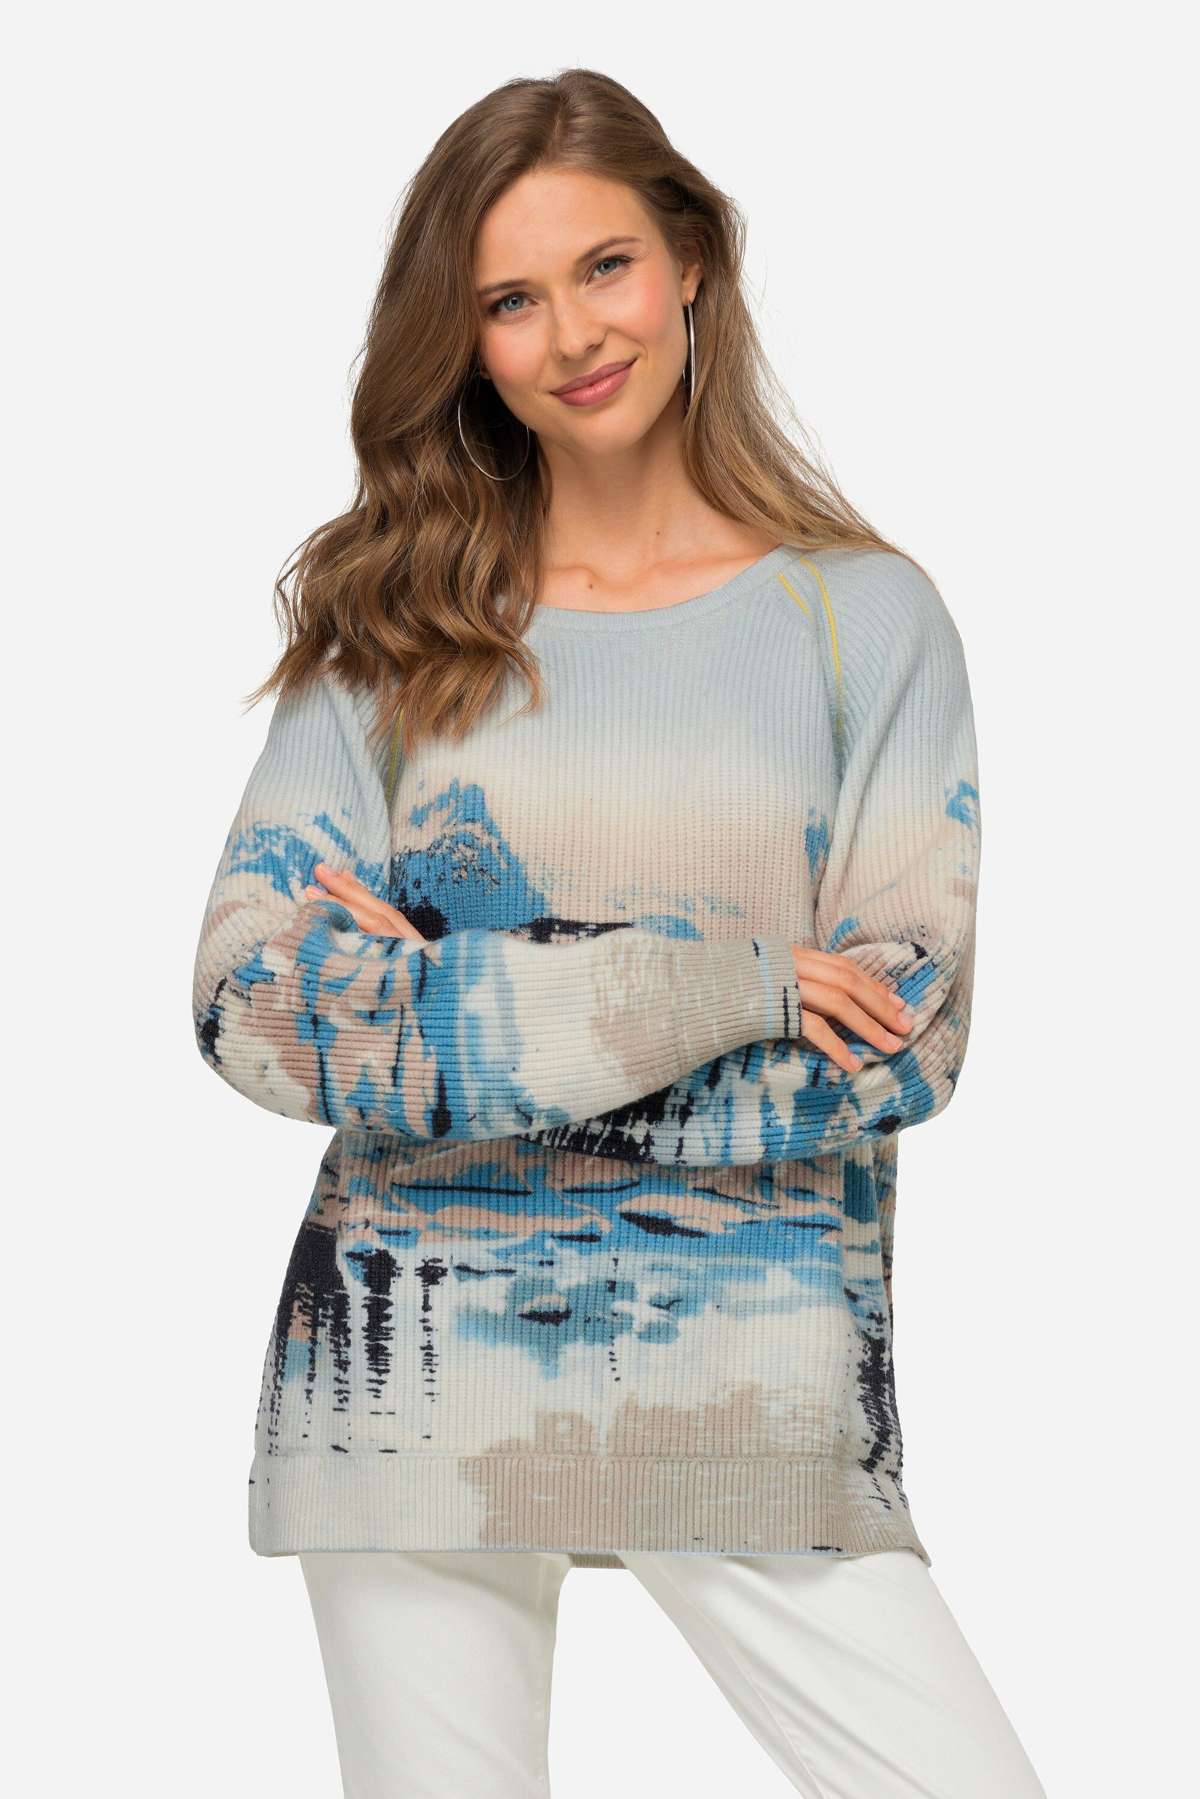 Вязаный свитер-пуловер с морским принтом, круглым вырезом и длинными рукавами.